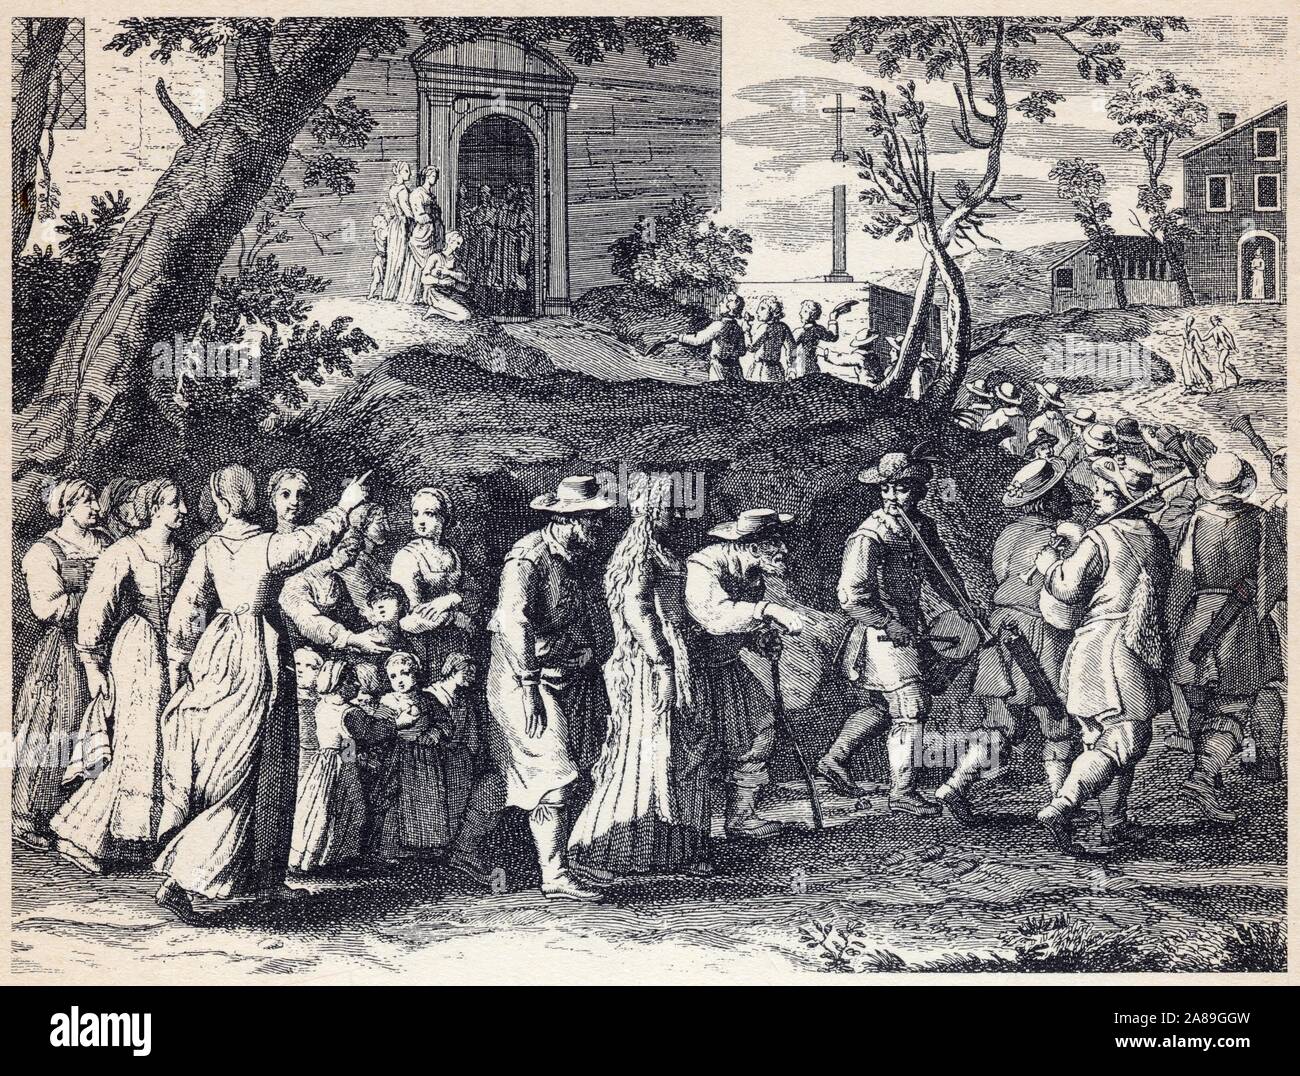 Le corteo nuziale rotocalco.de Bonnart.XVII ème siècle. Foto Stock